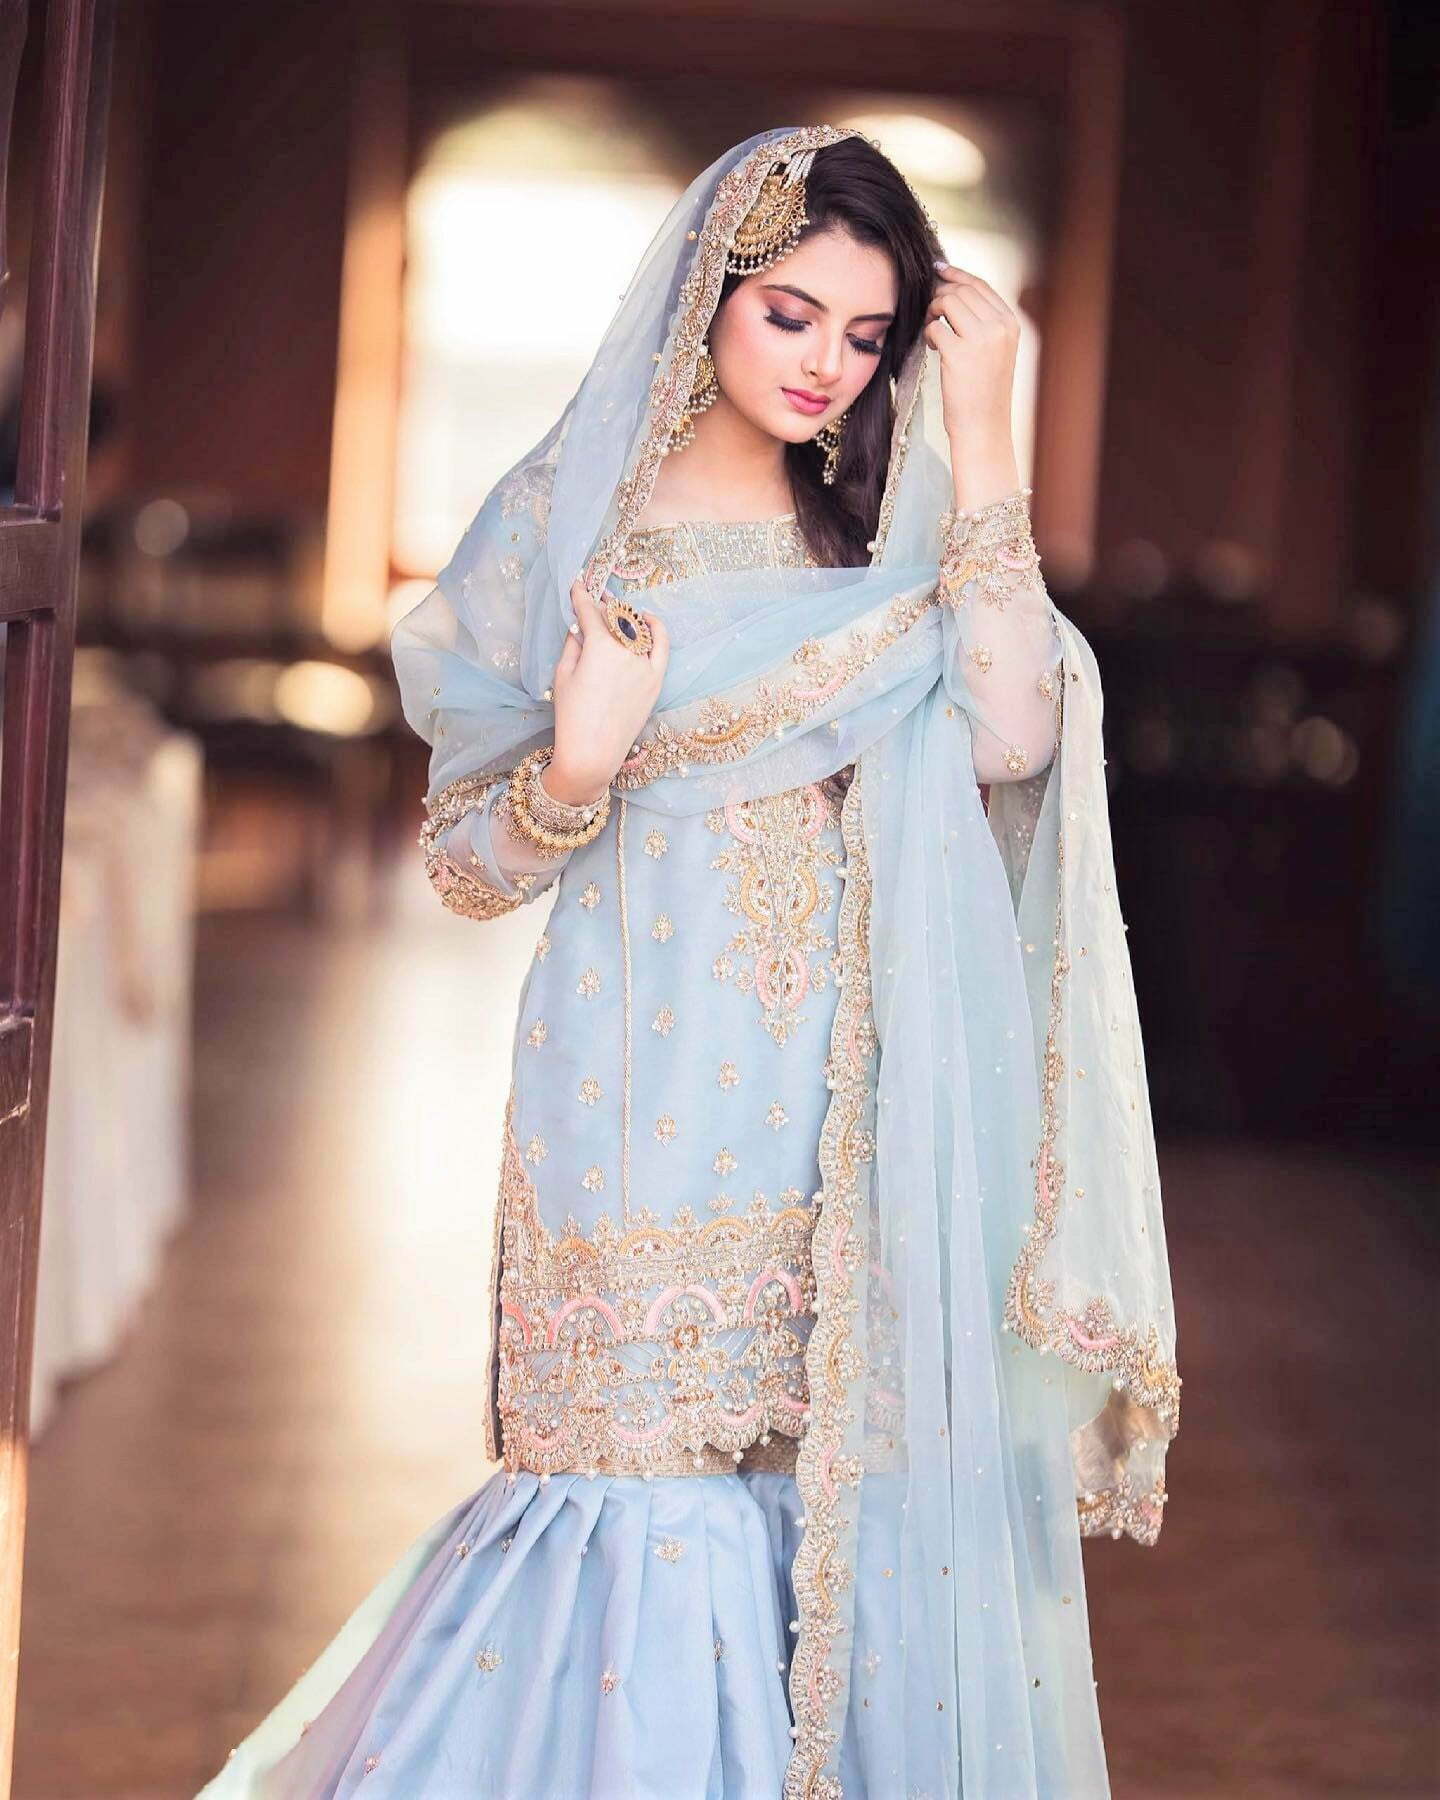 Pakistani bride bridal photoshoot poses